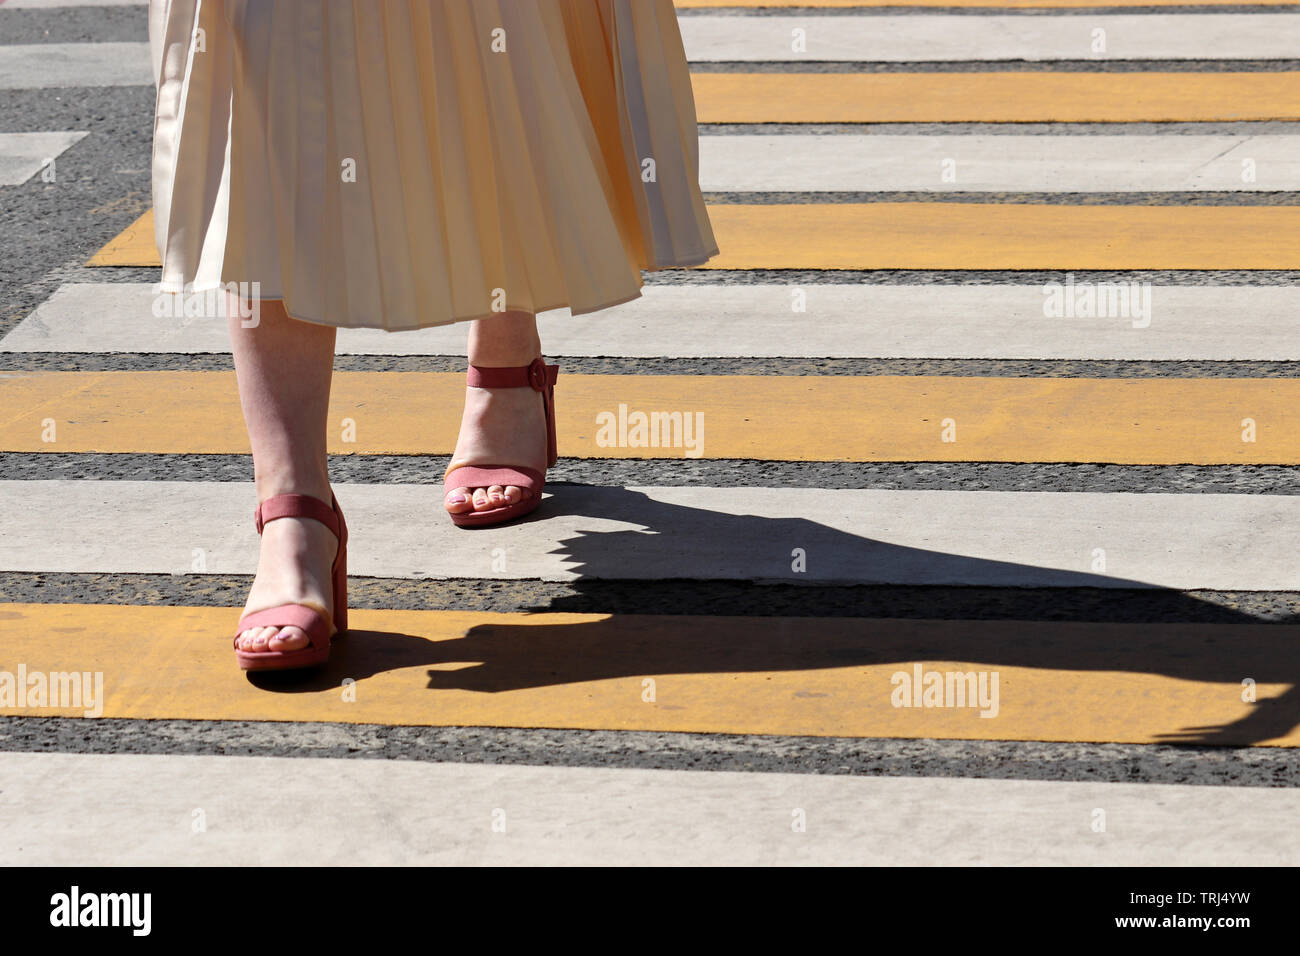 Femme dans une robe d'été et des chaussures à talons hauts marche sur passage piétons, l'ombre sur la moule. Marquage routier, les jambes sur le tableau de concordance Banque D'Images